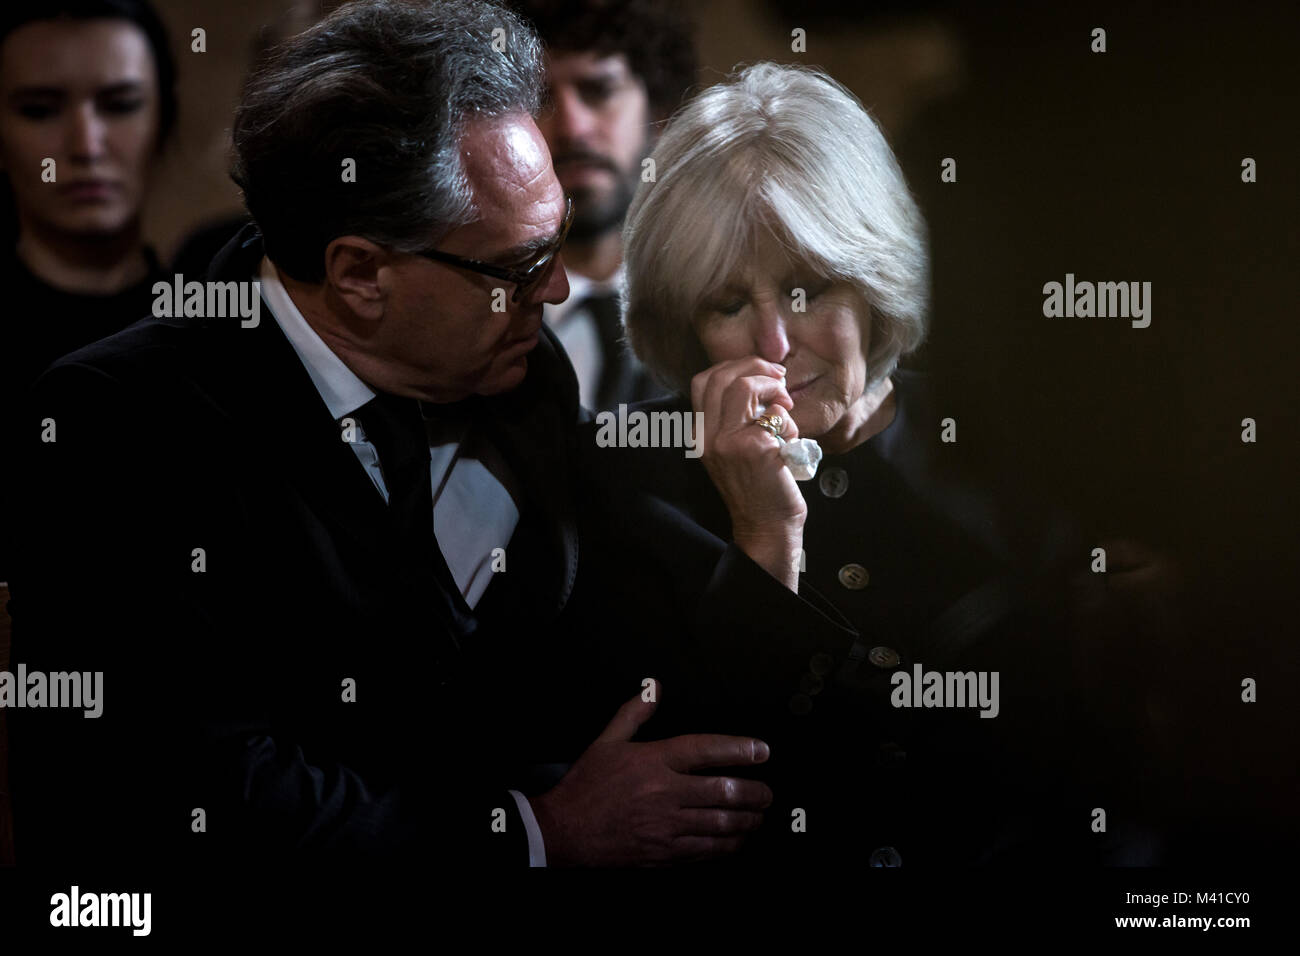 Senior woman être réconforté dans un salon funéraire Banque D'Images